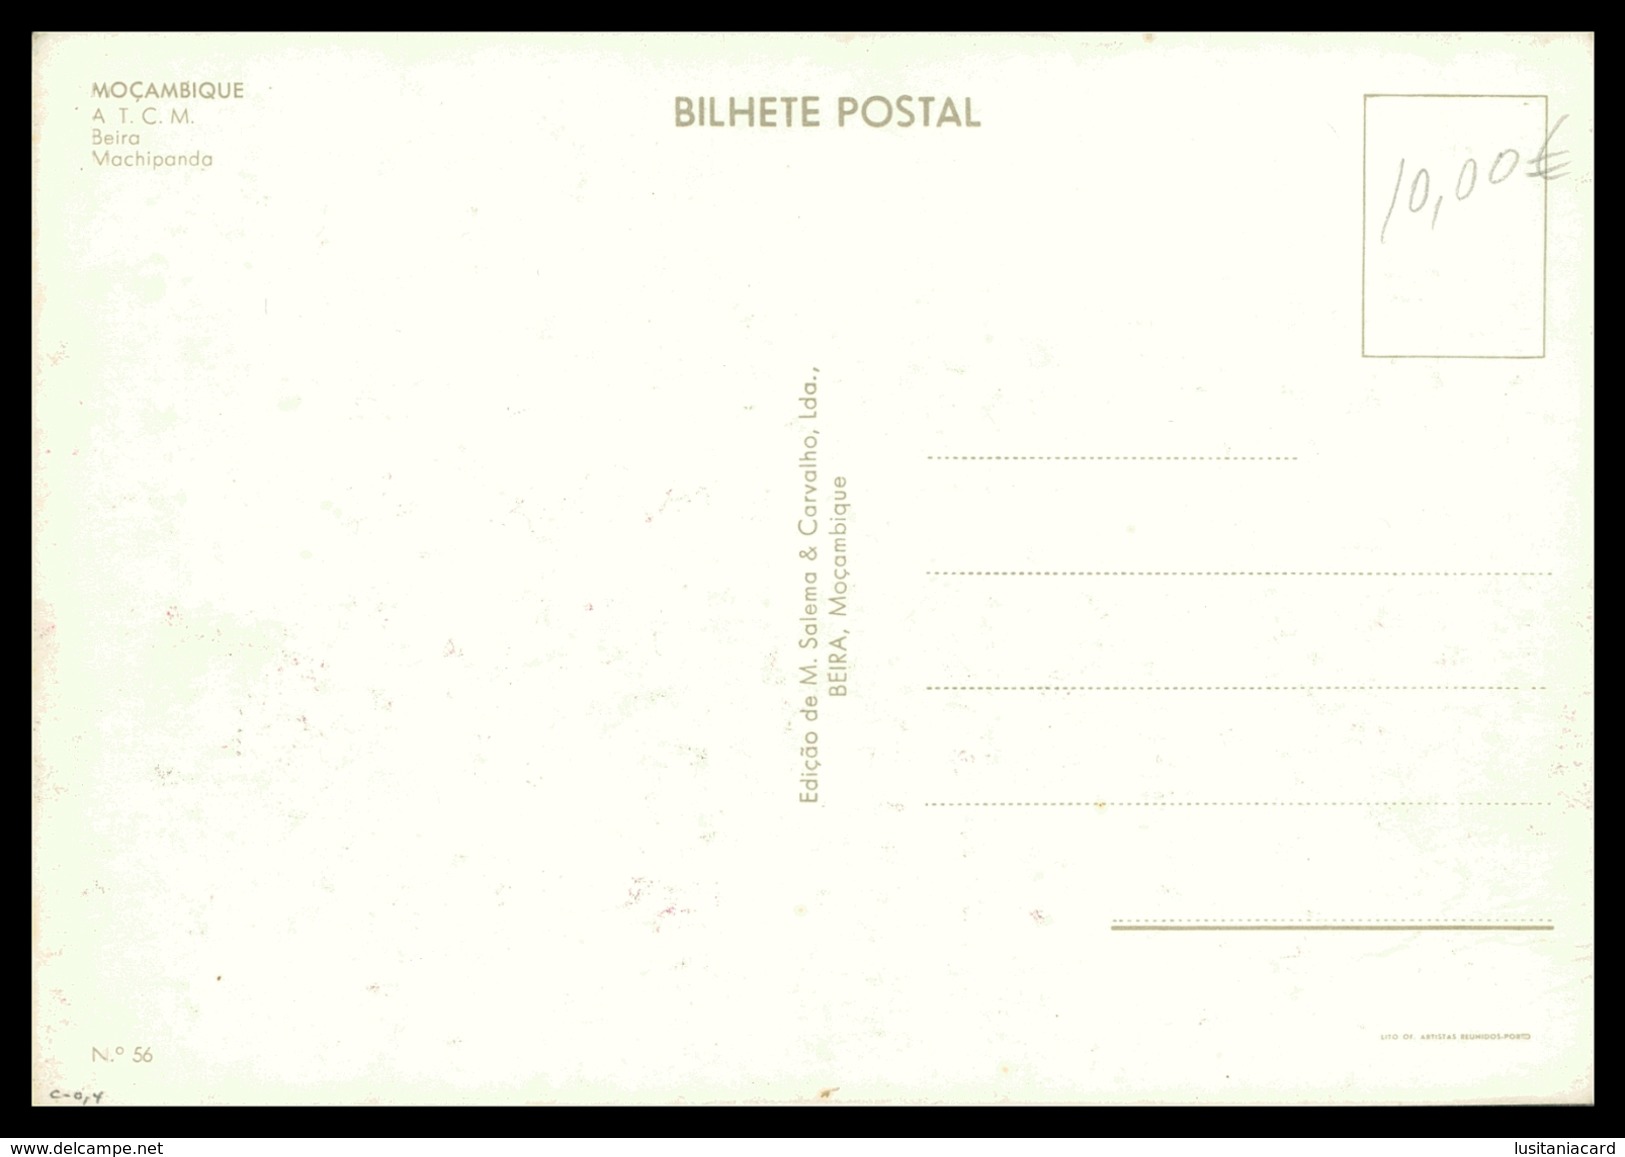 BEIRA - Machipanda (Ed. M. Salema & Carvalho Lda. Nº 56)  Carte Postale - Mozambique